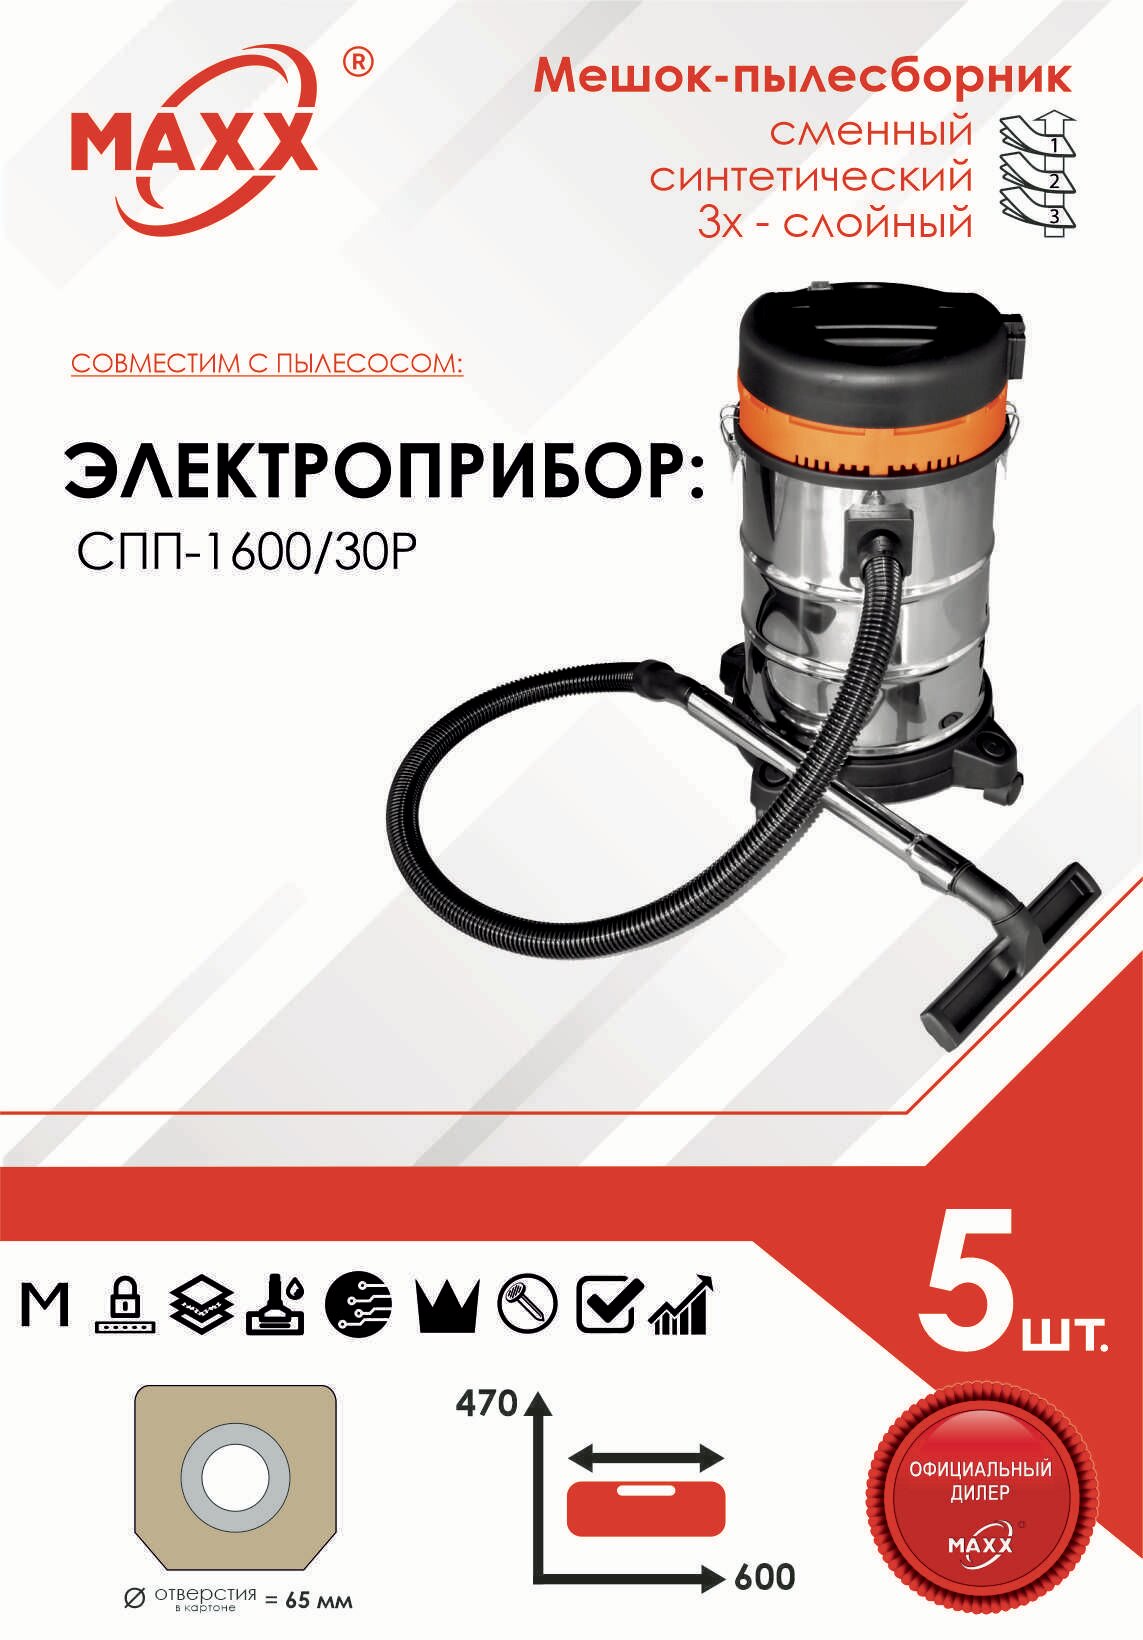 Мешок - пылесборник 5 шт. для строительного пылесоса электроприбор СПП-1600/30Р